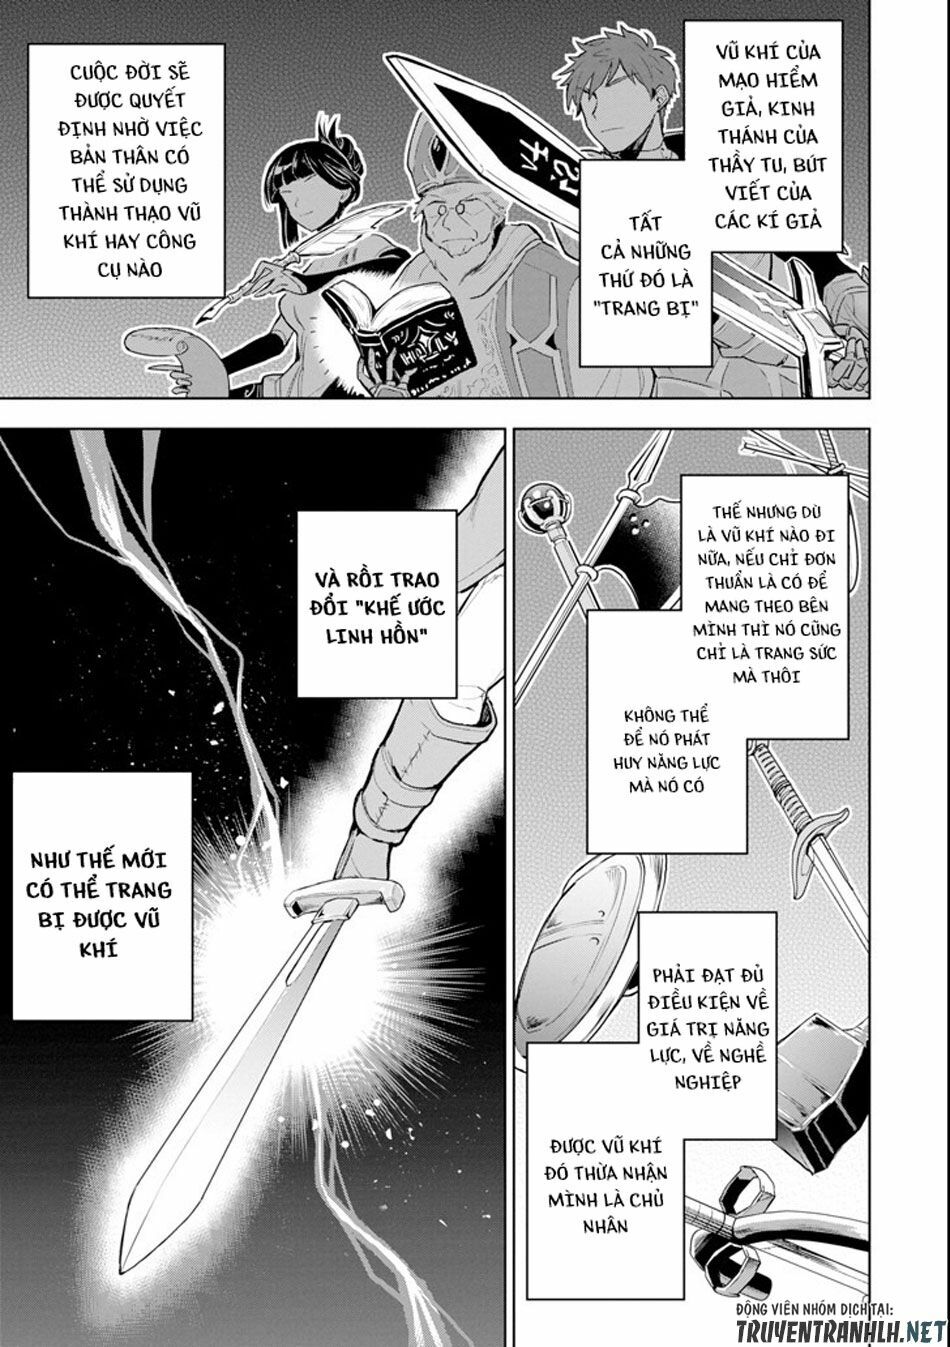 Sobiwaku Zero No Saikyou Kenshi Demo, Noroi No Soubi (Kawai) Nara 9999-Ko Tsuke-Hodai Chương 1 Trang 12